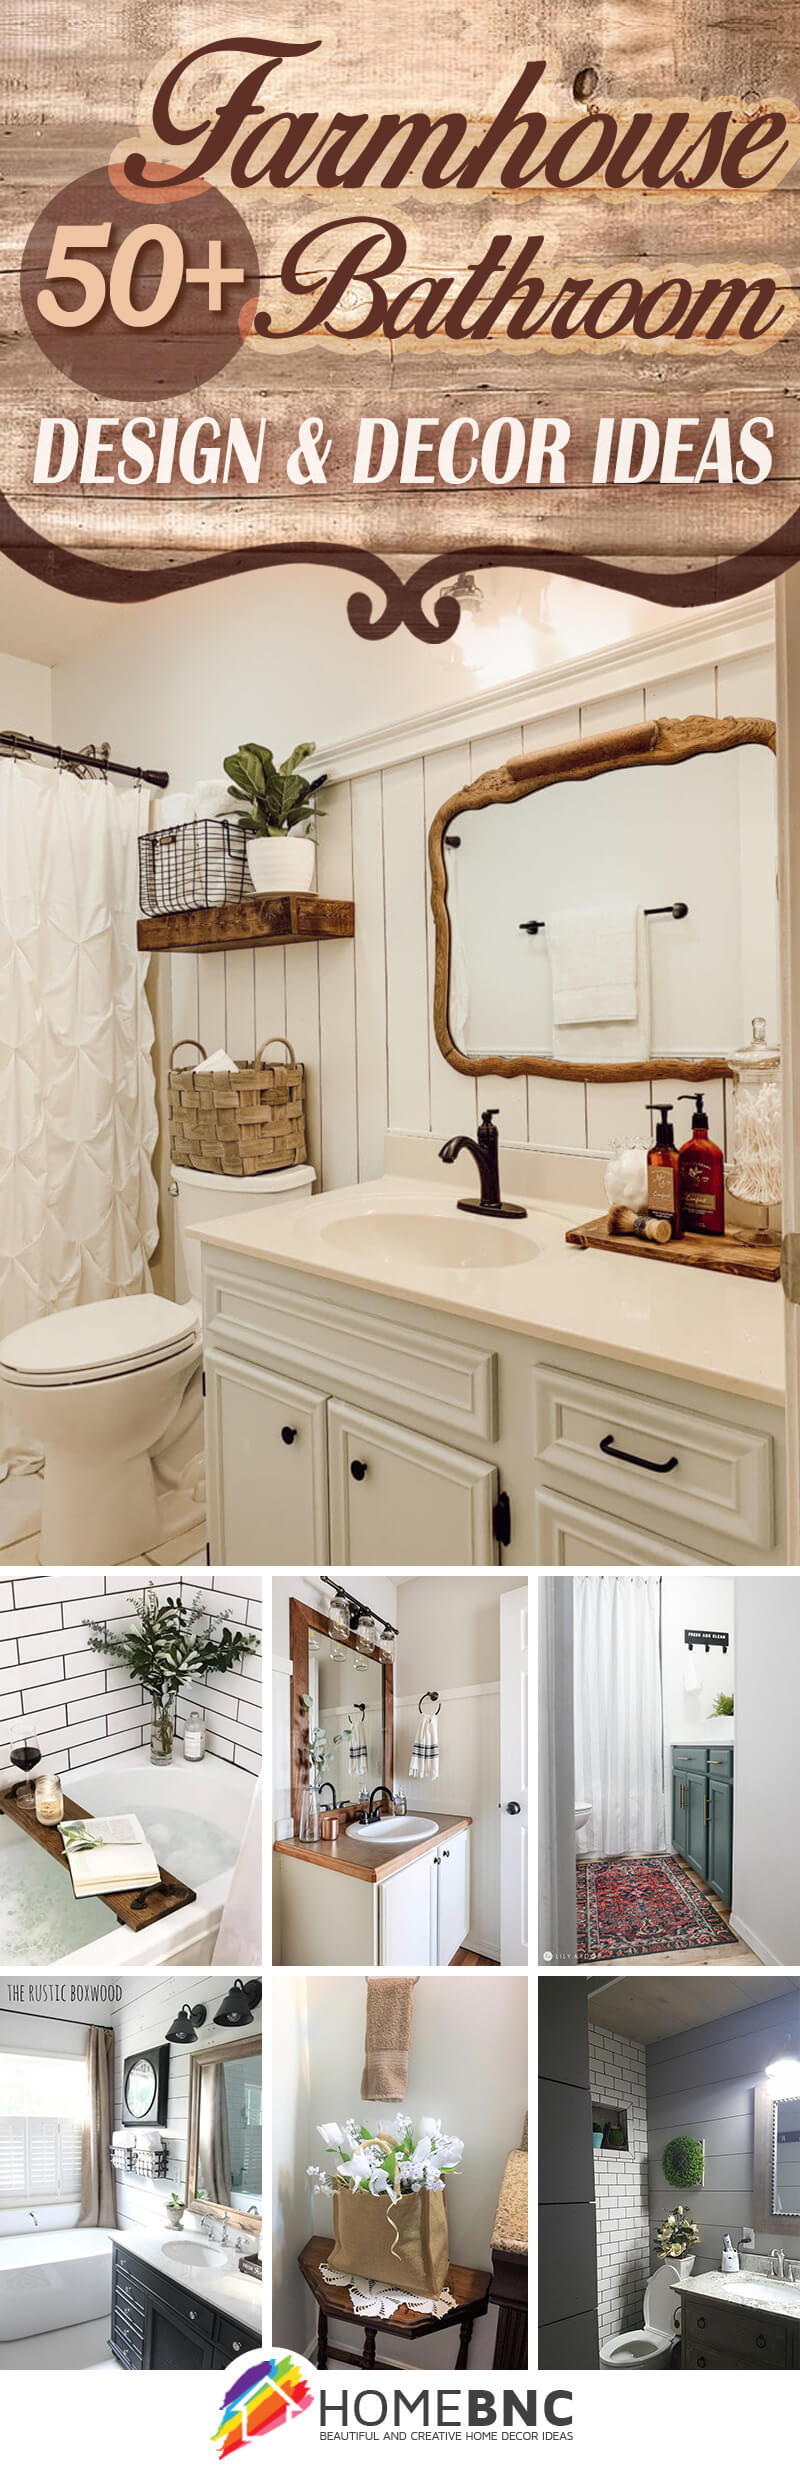 Primitive Country Faucet/Spigot Bath Soap Dish Kitchen/Bathroom Farmhouse Decor 